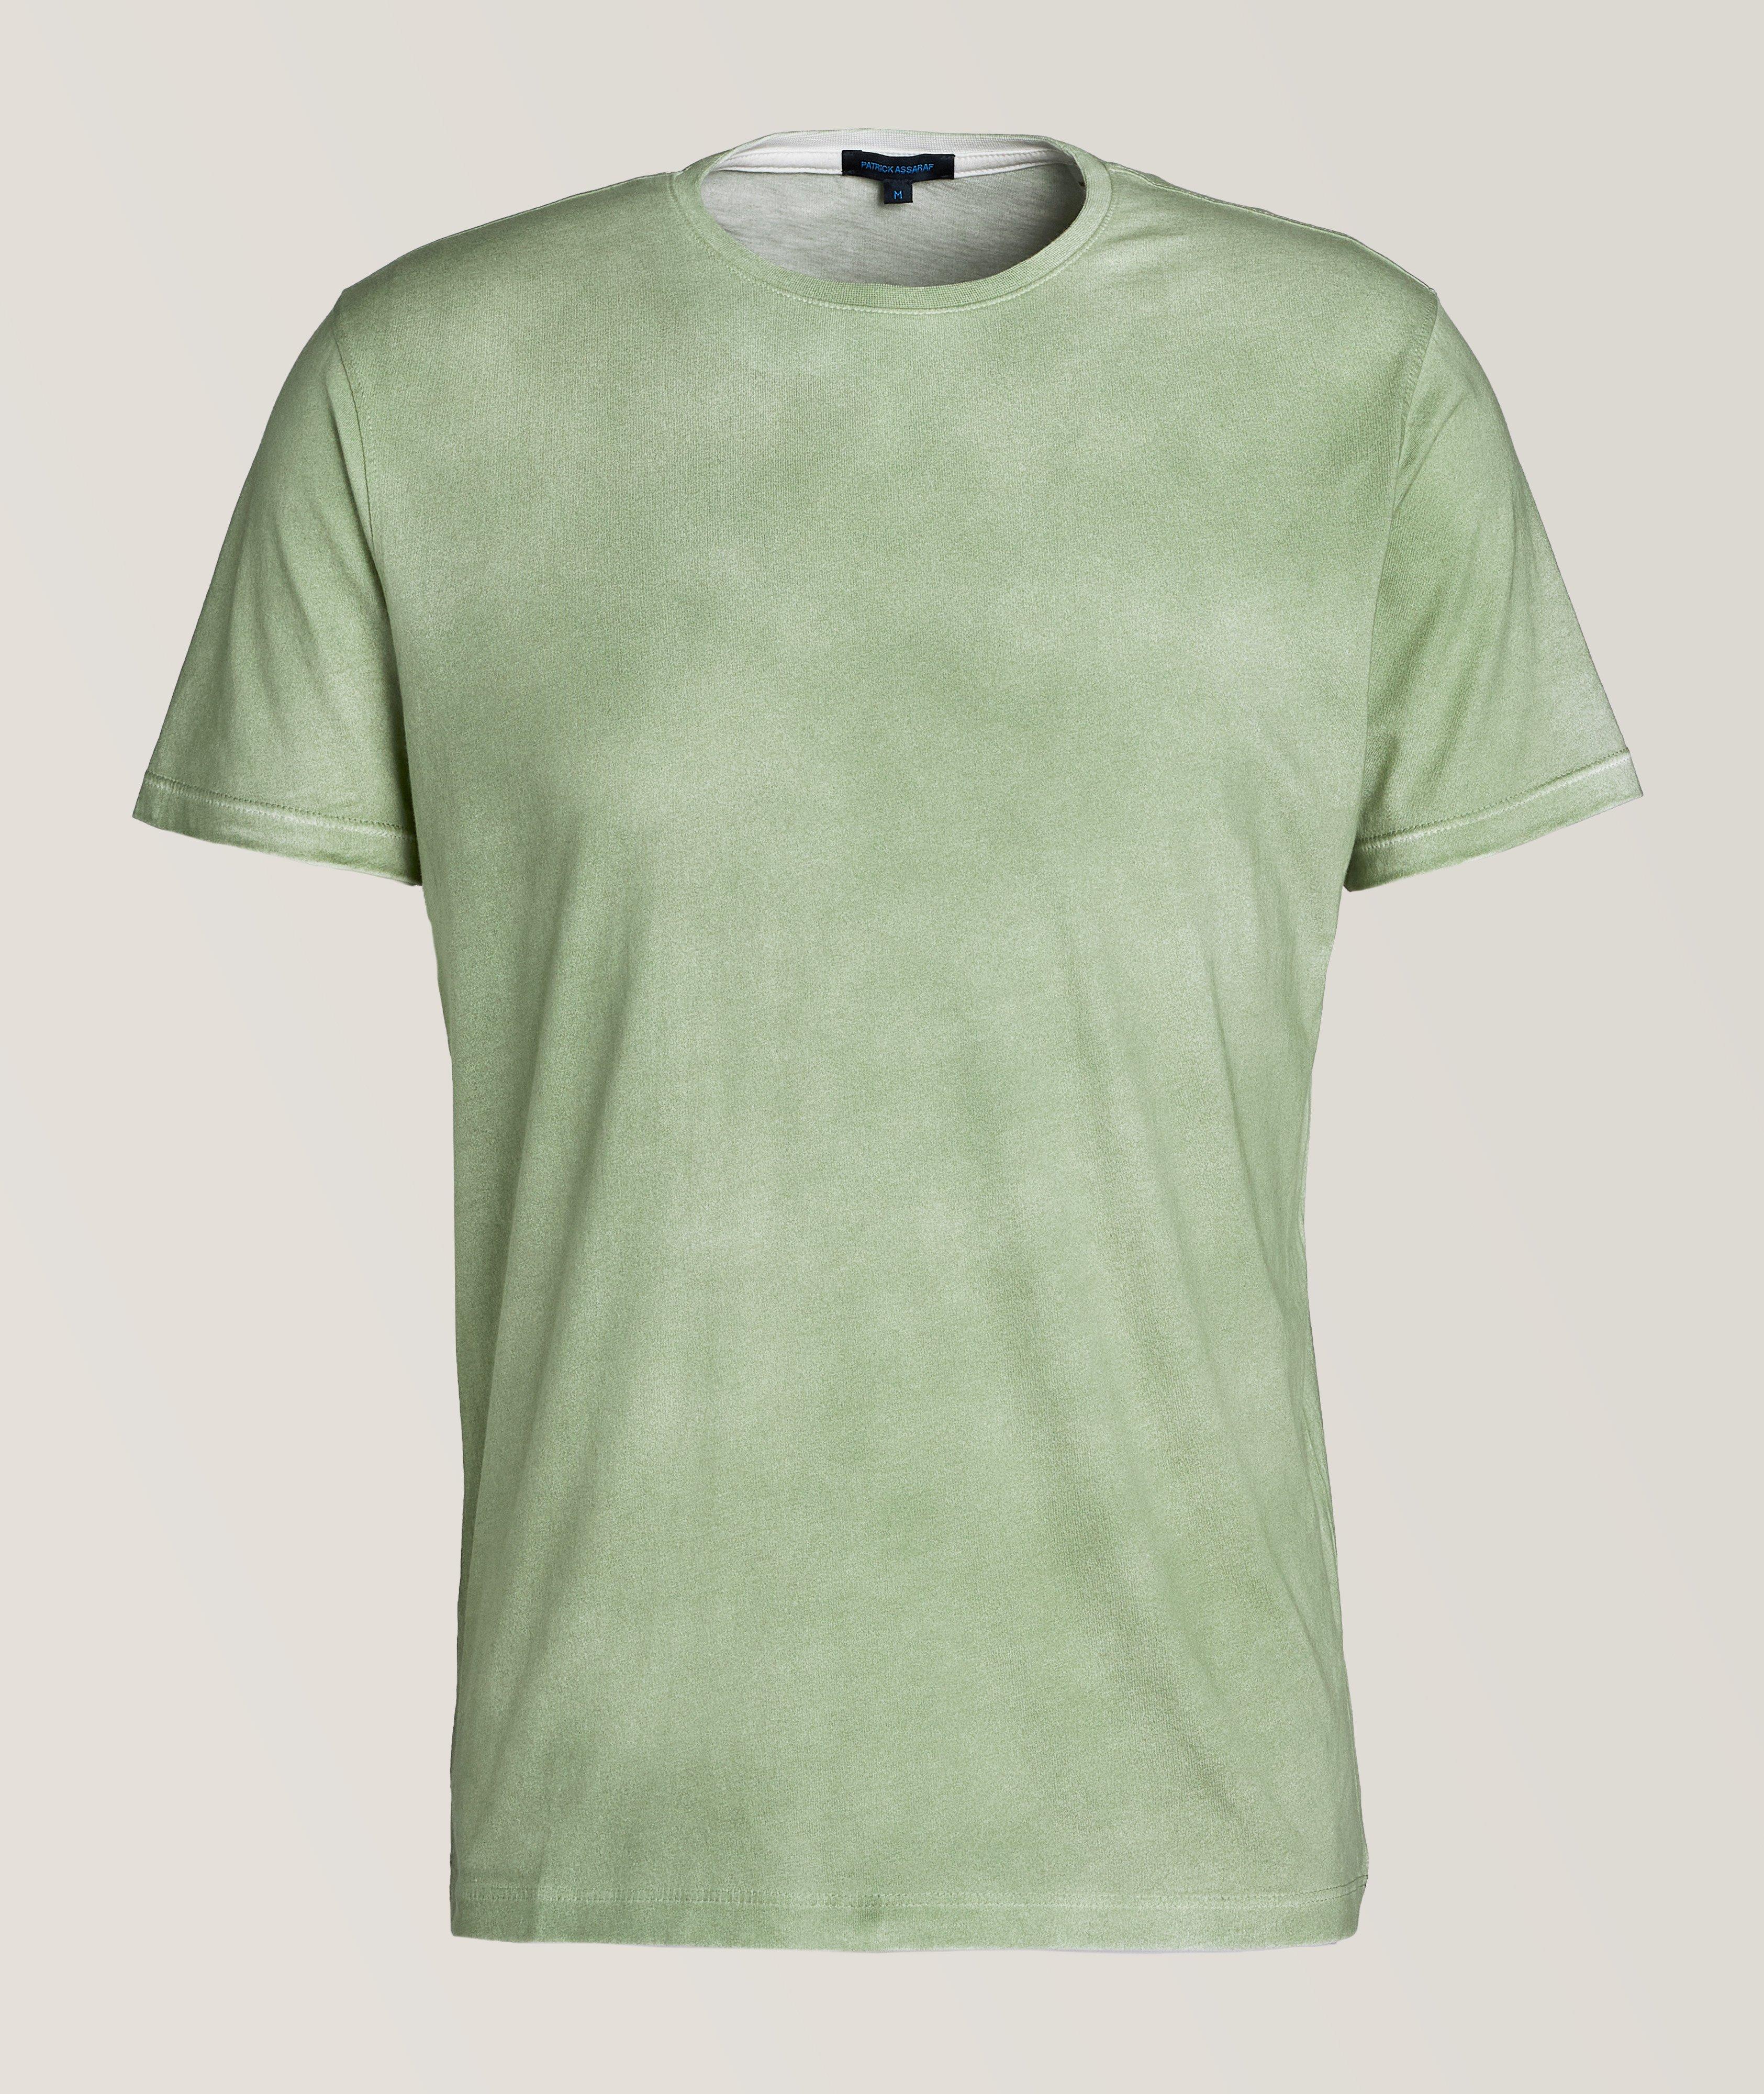 Washed Pima Cotton T-Shirt image 0